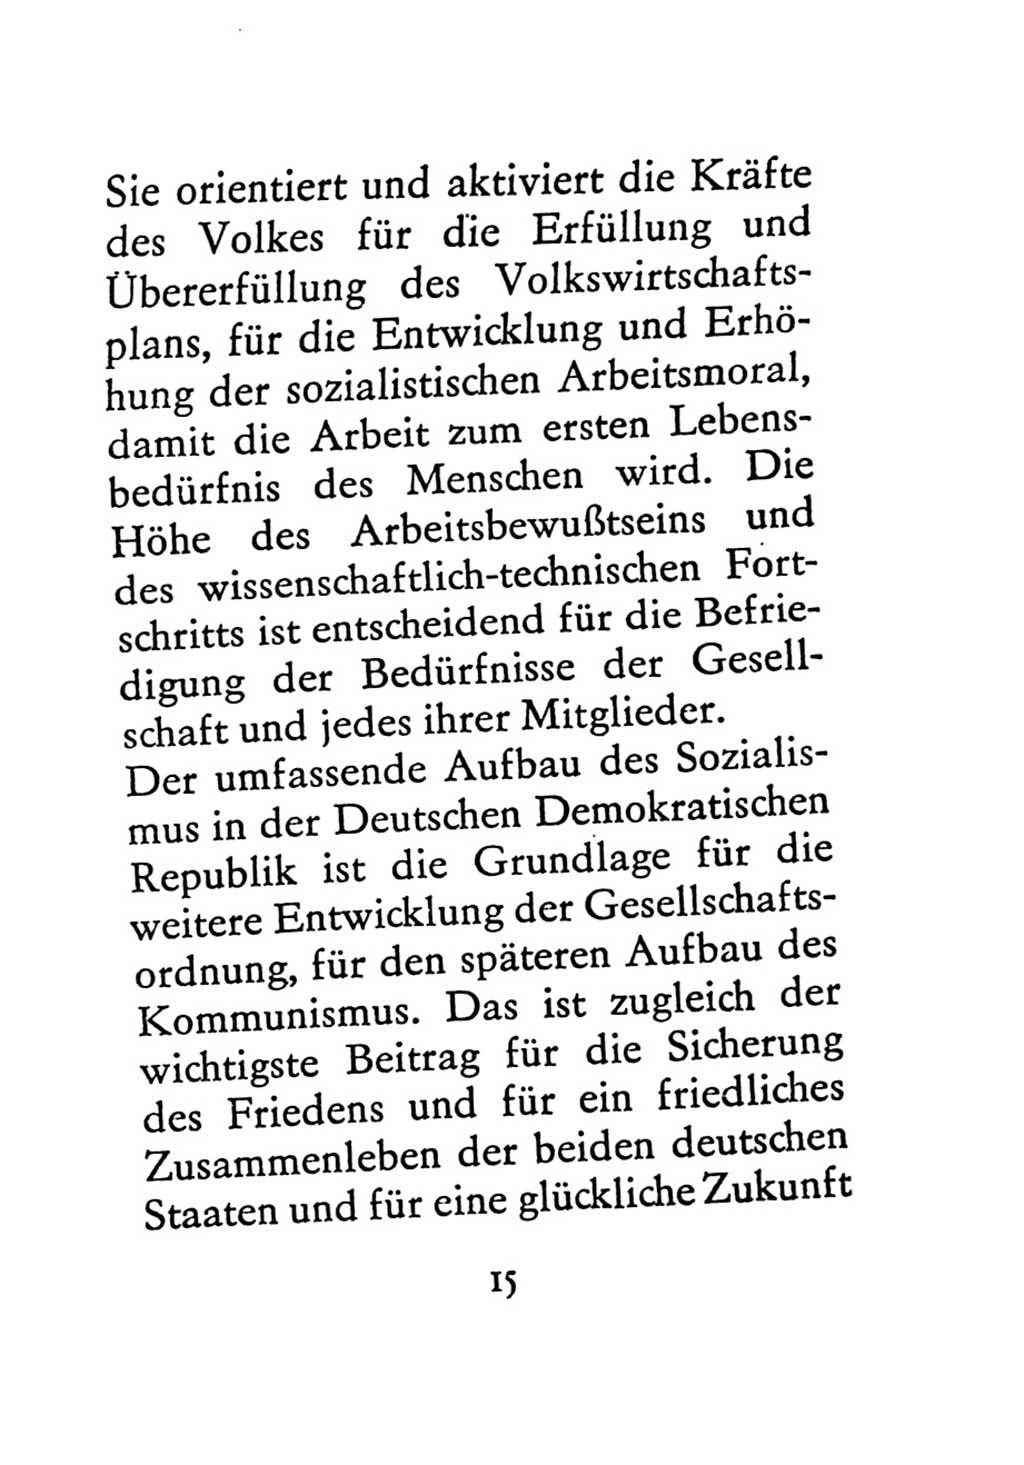 Statut der Sozialistischen Einheitspartei Deutschlands (SED) 1971, Seite 15 (St. SED DDR 1971, S. 15)